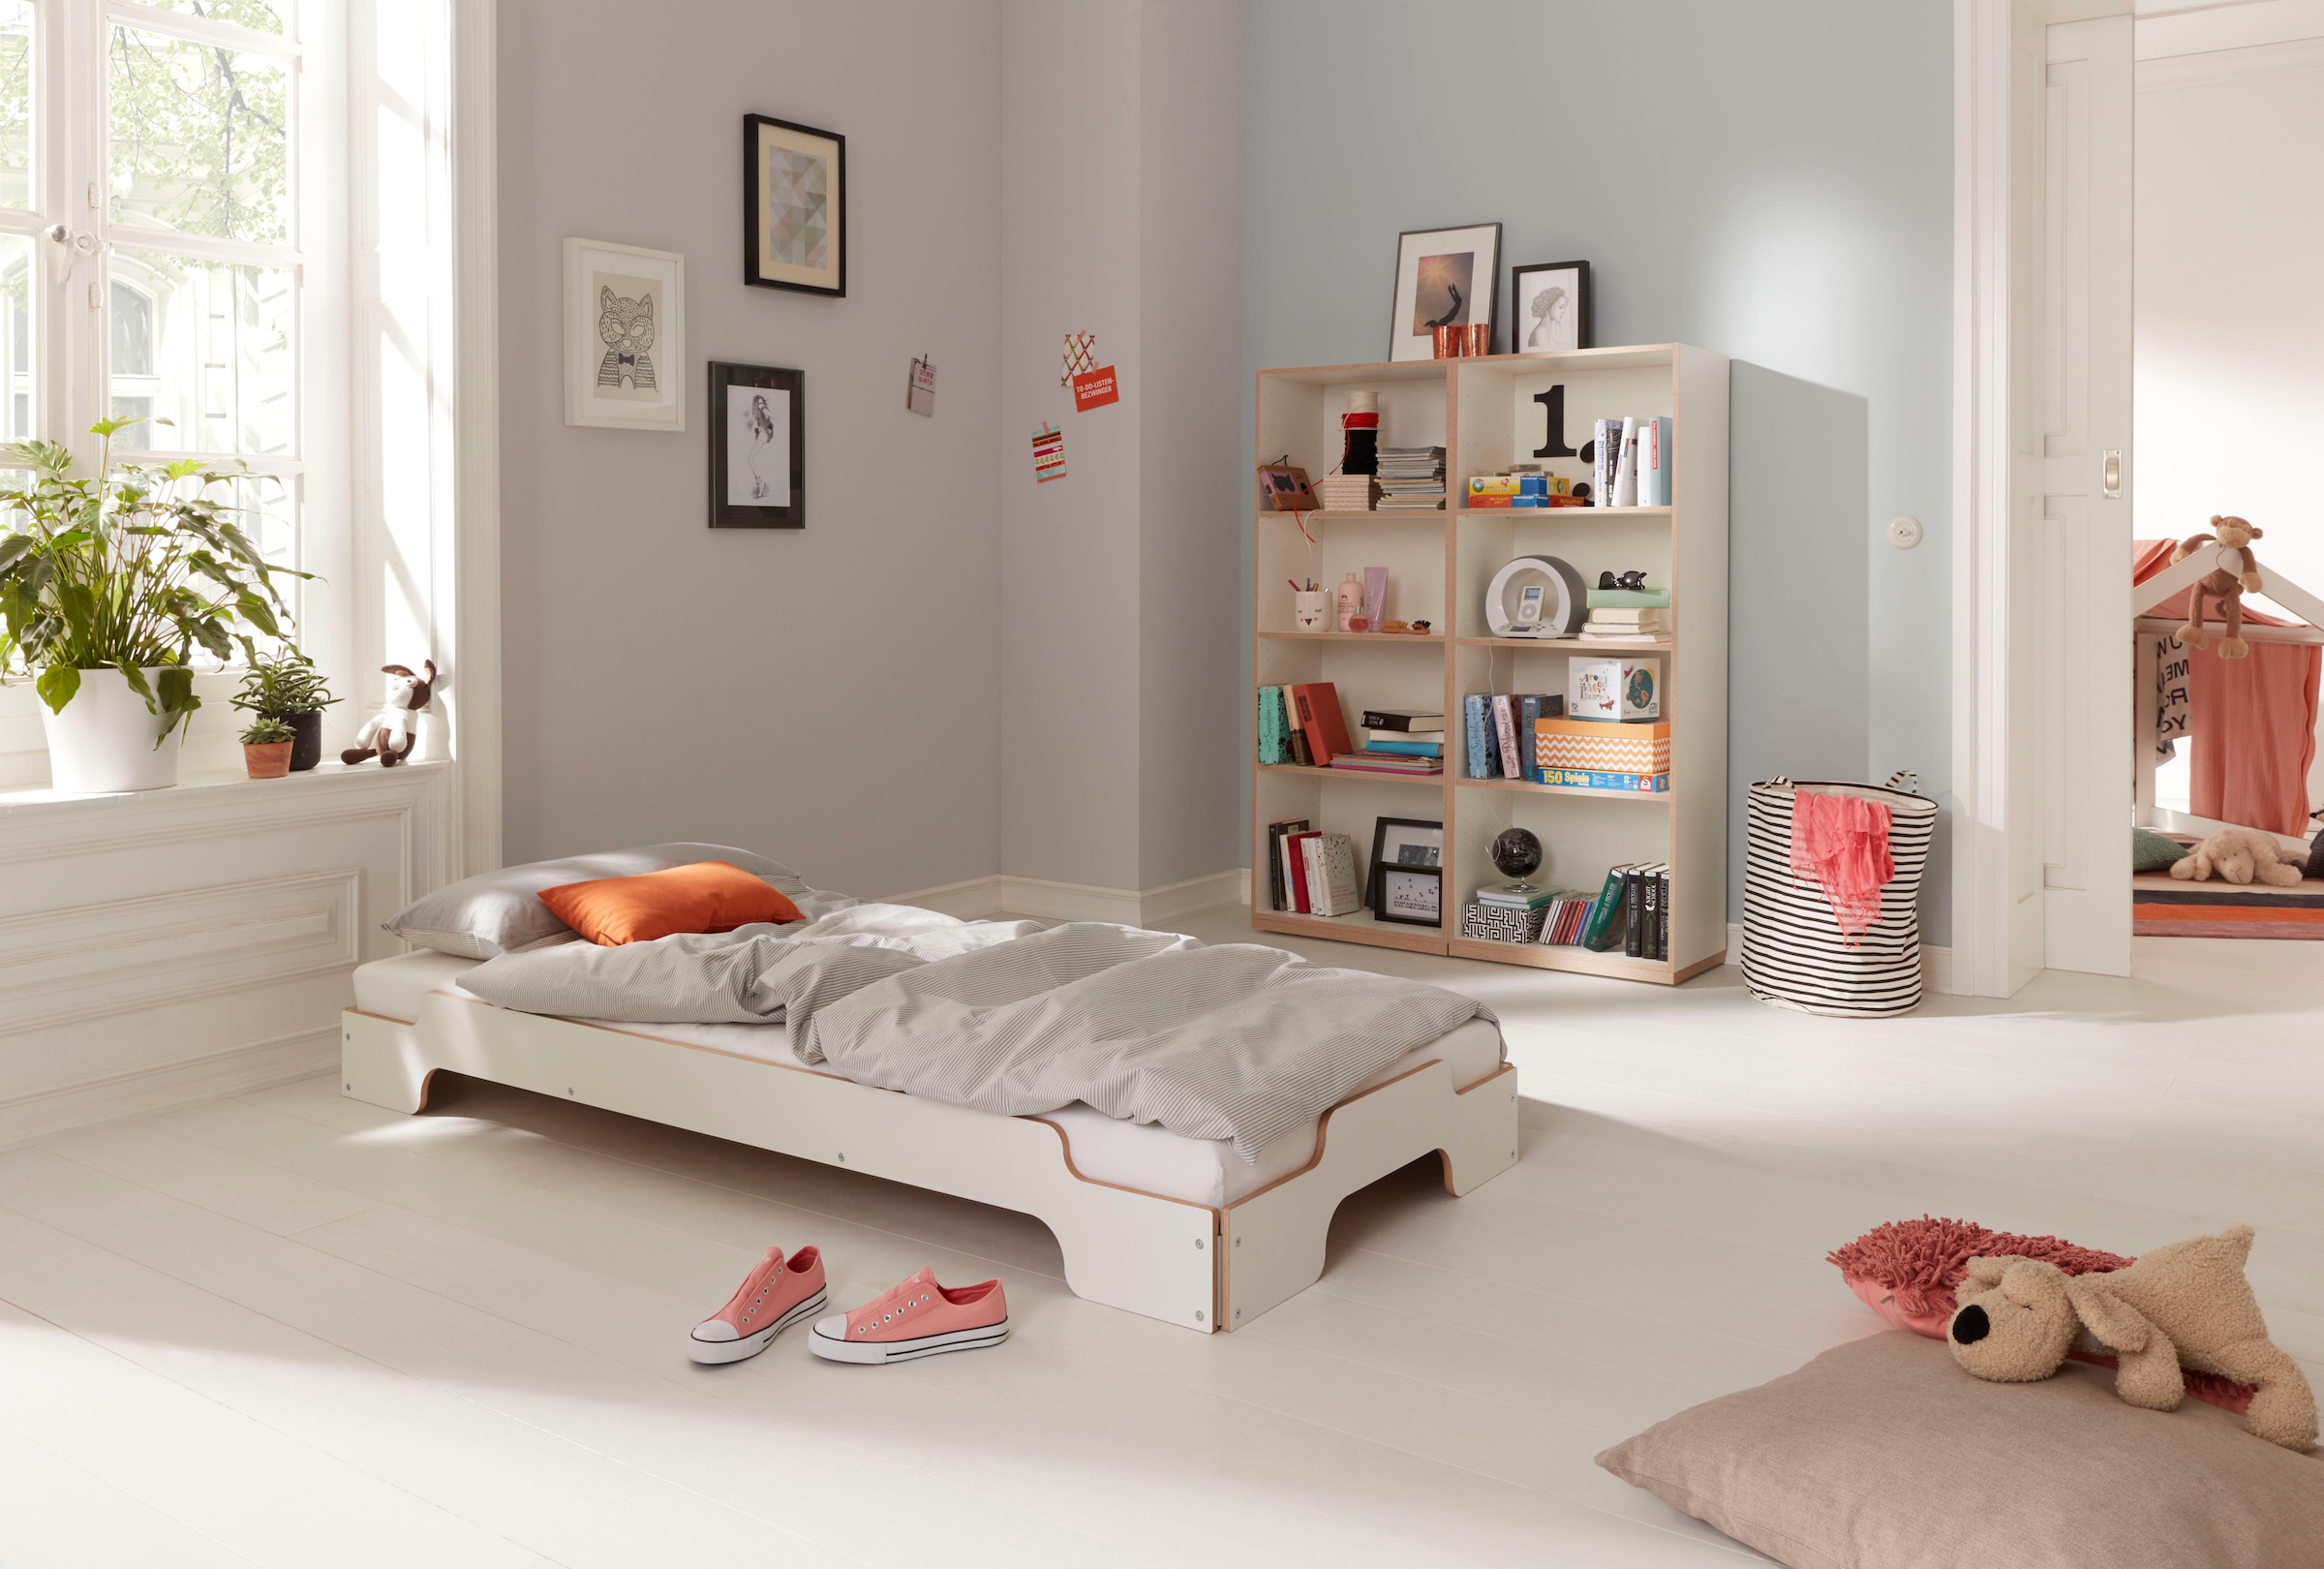 Müller SMALL LIVING Stapelbett »STAPELLIEGE Komfort (eine Liege)«, Komforthöhe 27.5 cm, ausgezeichnet mit dem German Design Award - 2019